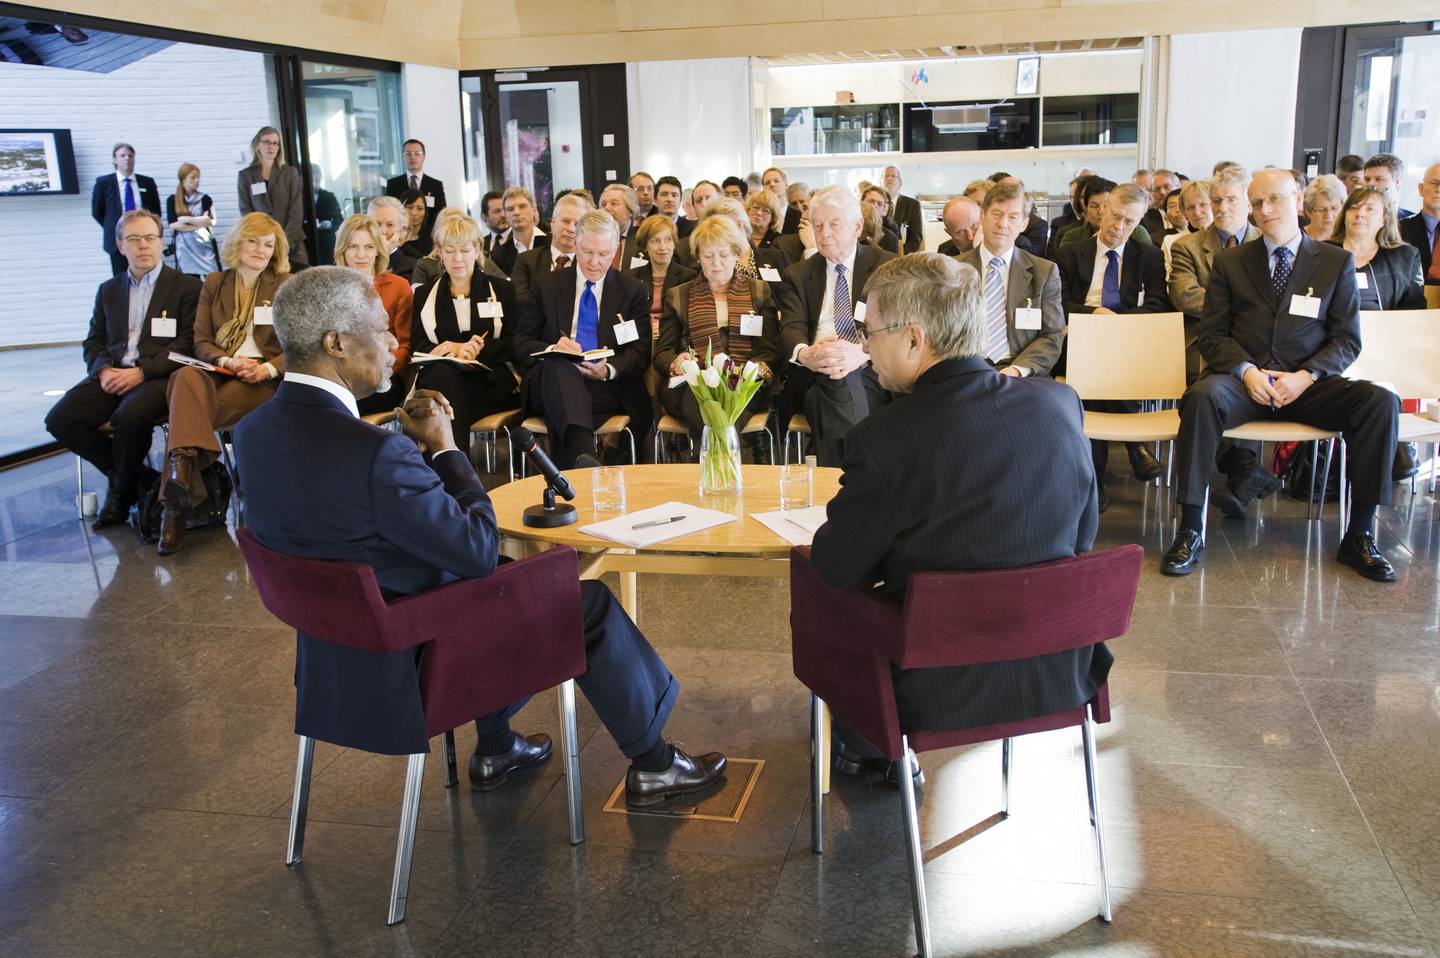 Kofi Annan tidligere generalsekretÊr i FN seminar pÂ VoksenÂsen i regi av Oslosenteret Kjell Magne Bondevik fred konflikter